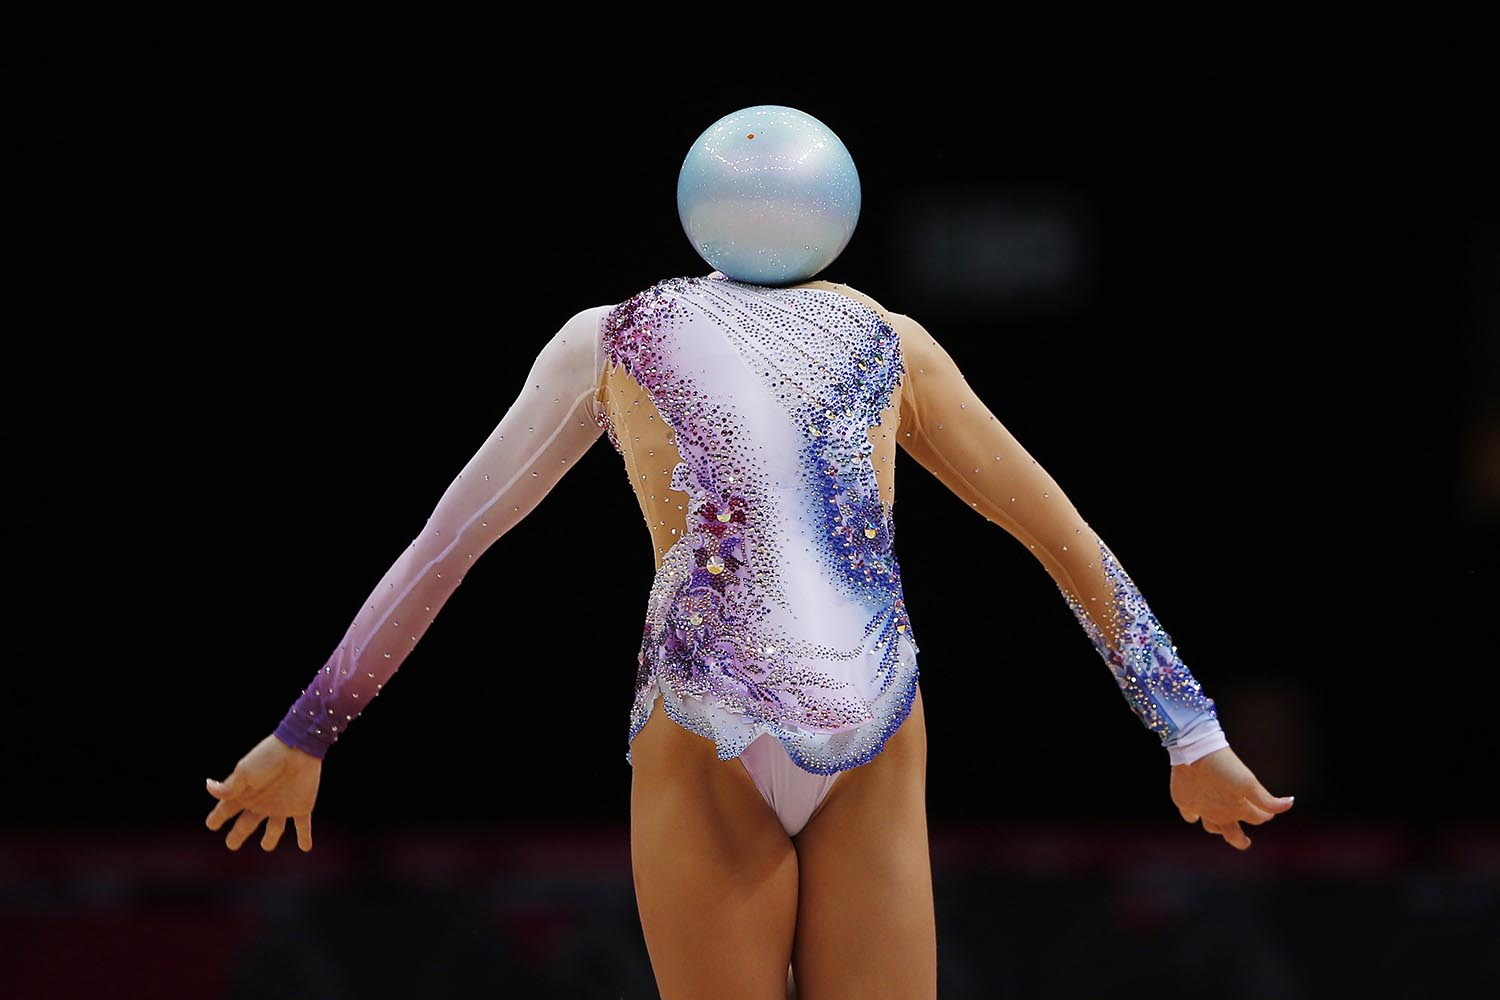 Especial Ilusiones ópticas. La gimnasta búlgara Silviya Miteva en los Juegos Olímpicos de Londres